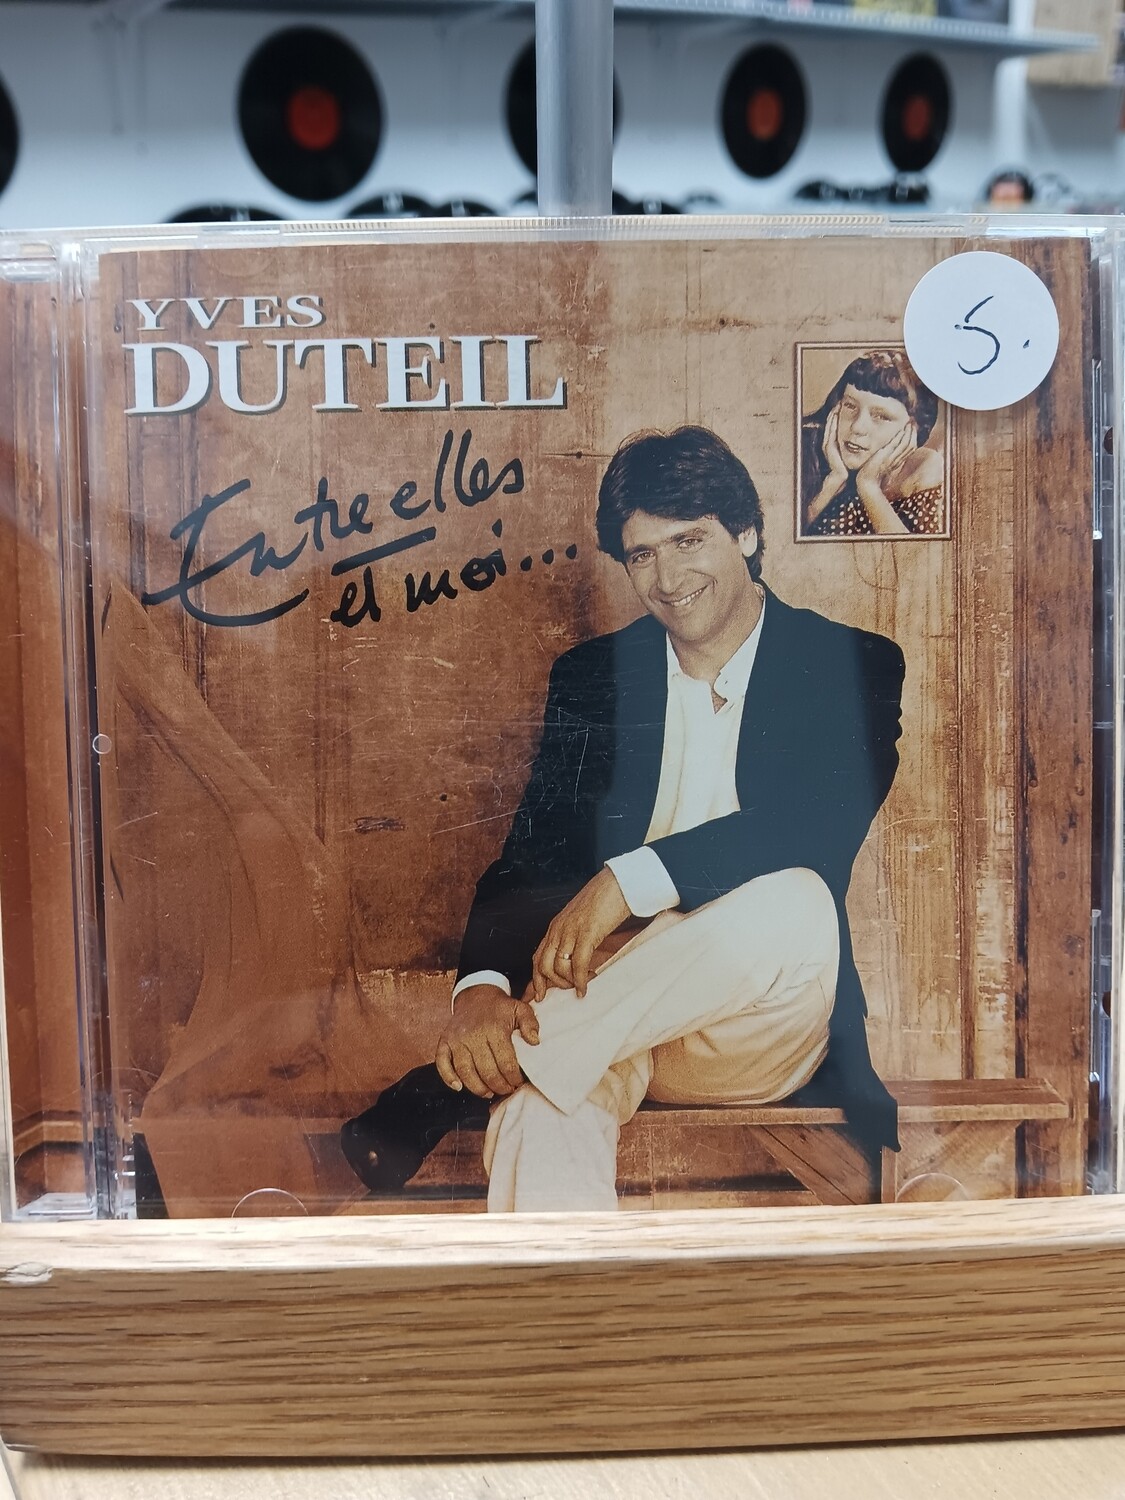 Yves Duteil - Entre elles et moi (CD)